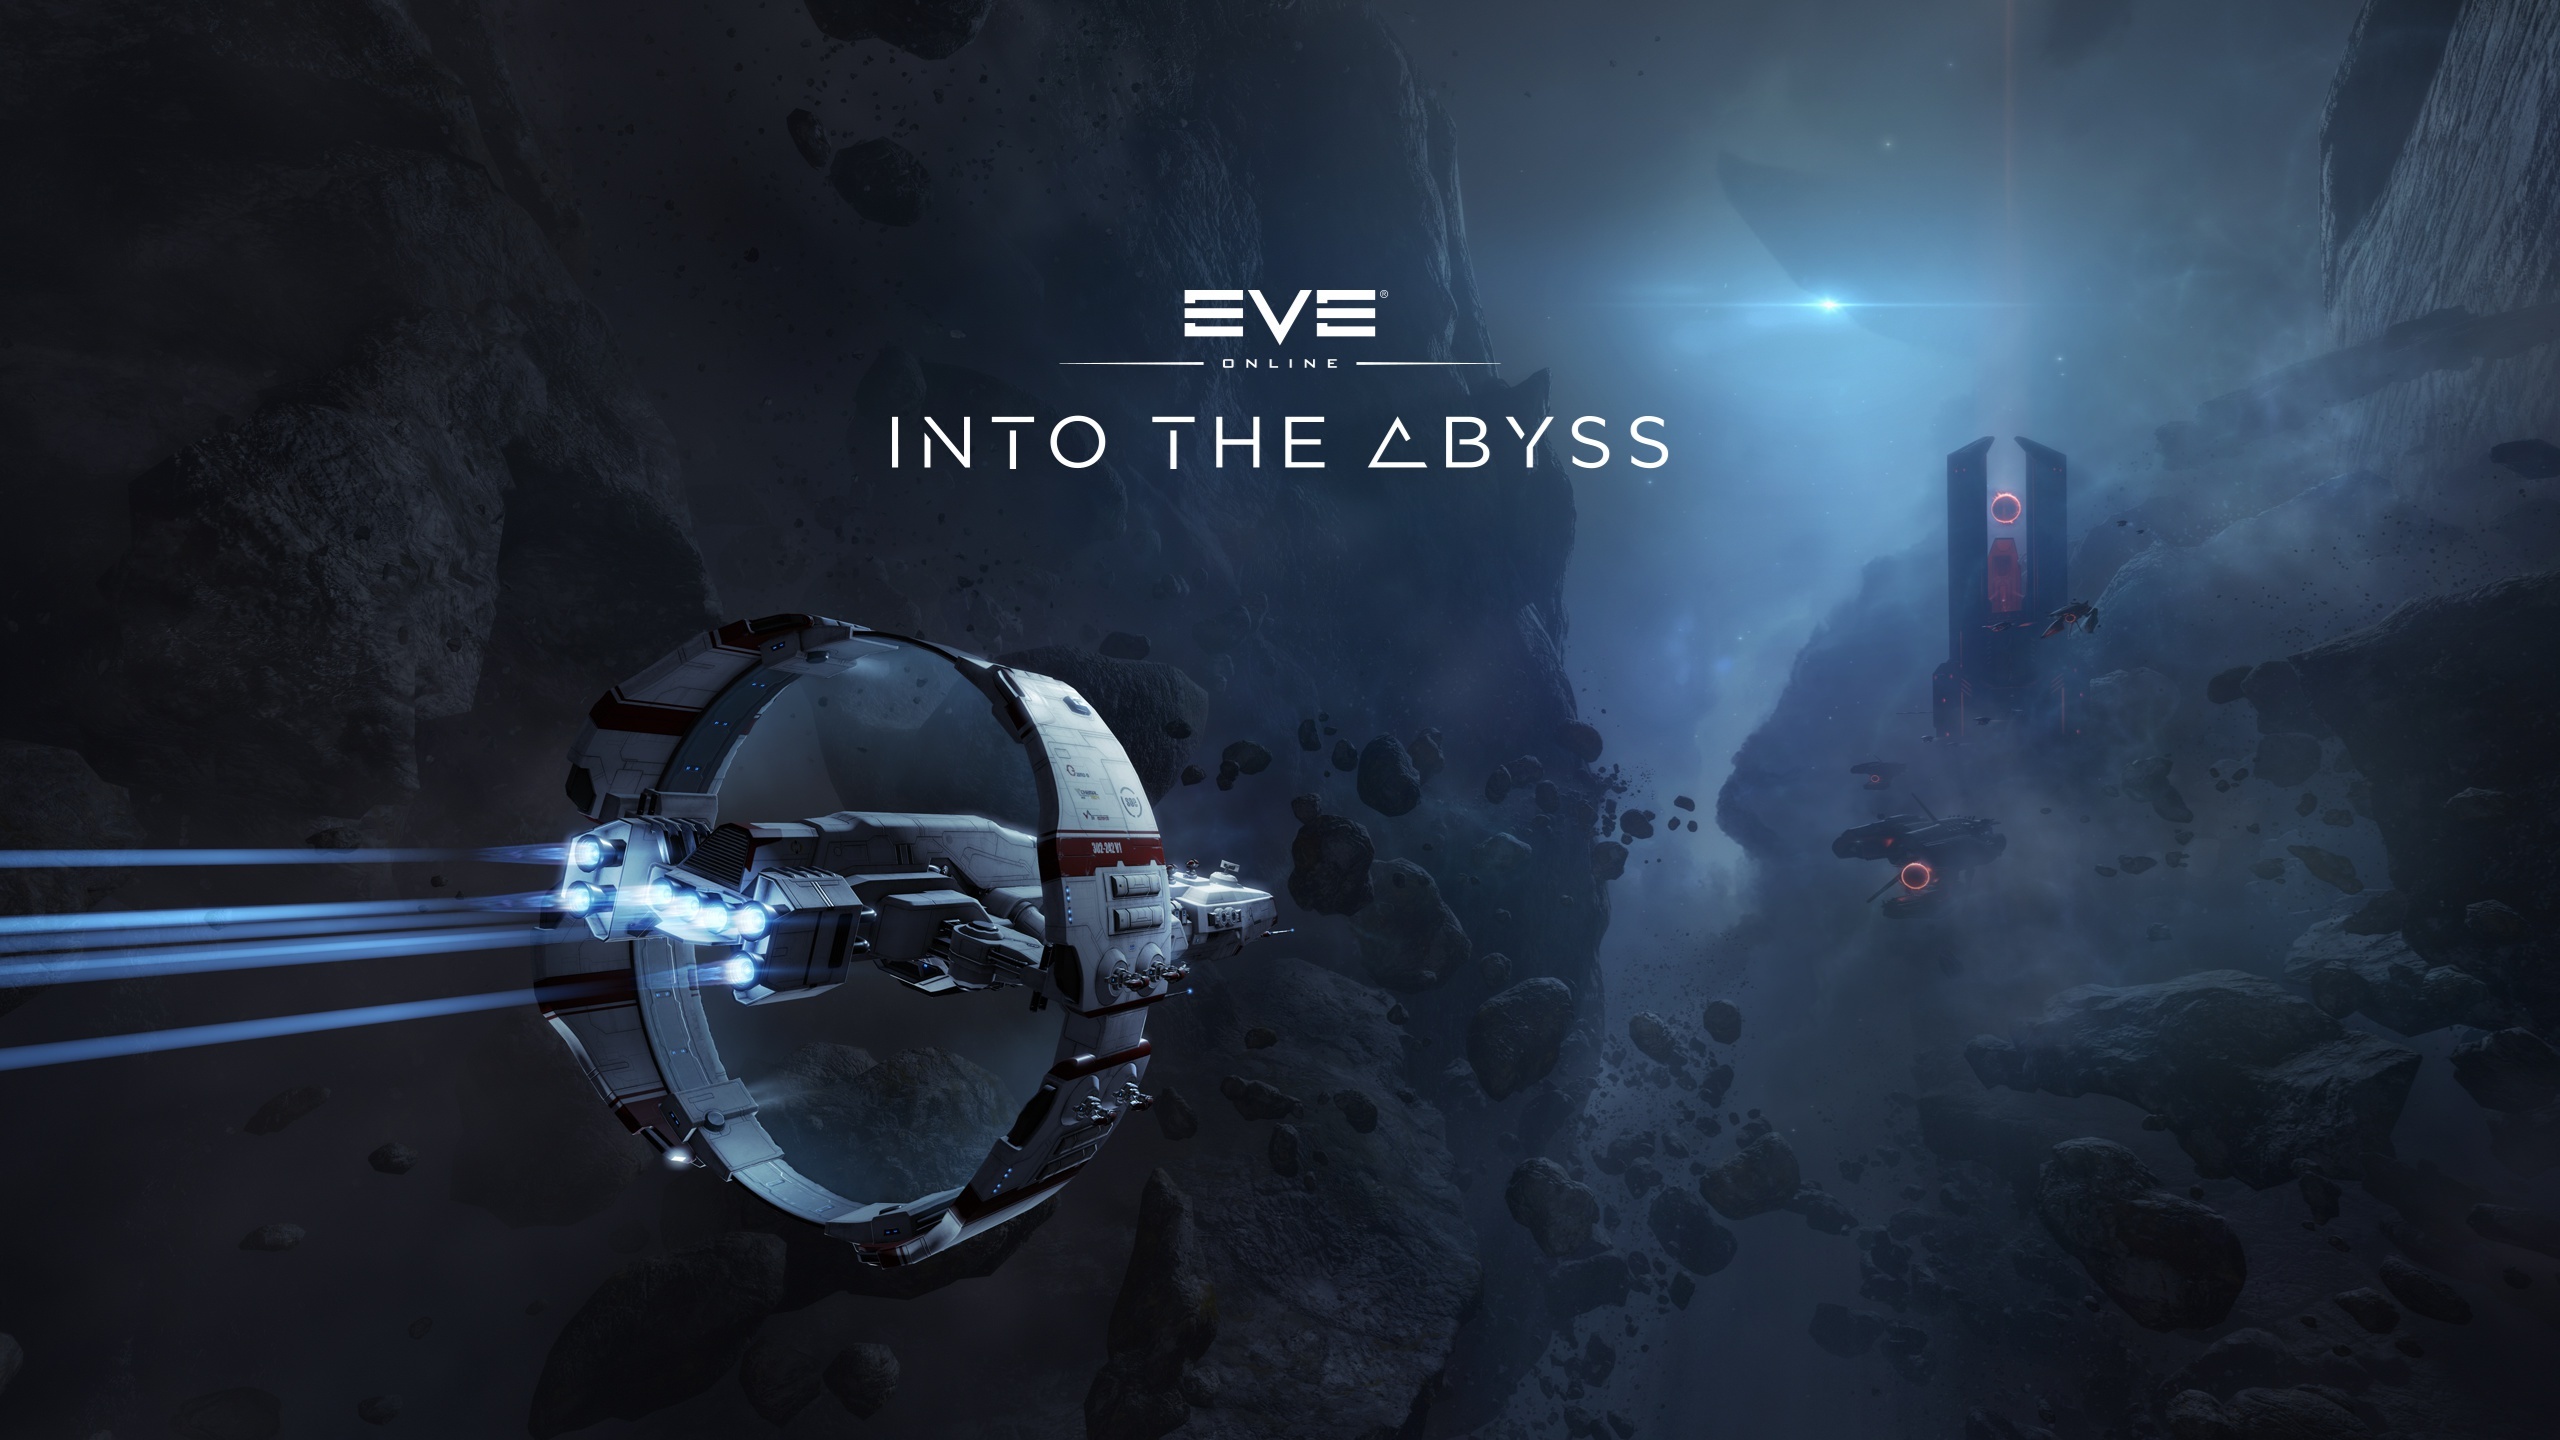 EVE Online, Abyssal adventures, Desktop wallpapers, Background images, 2560x1440 HD Desktop